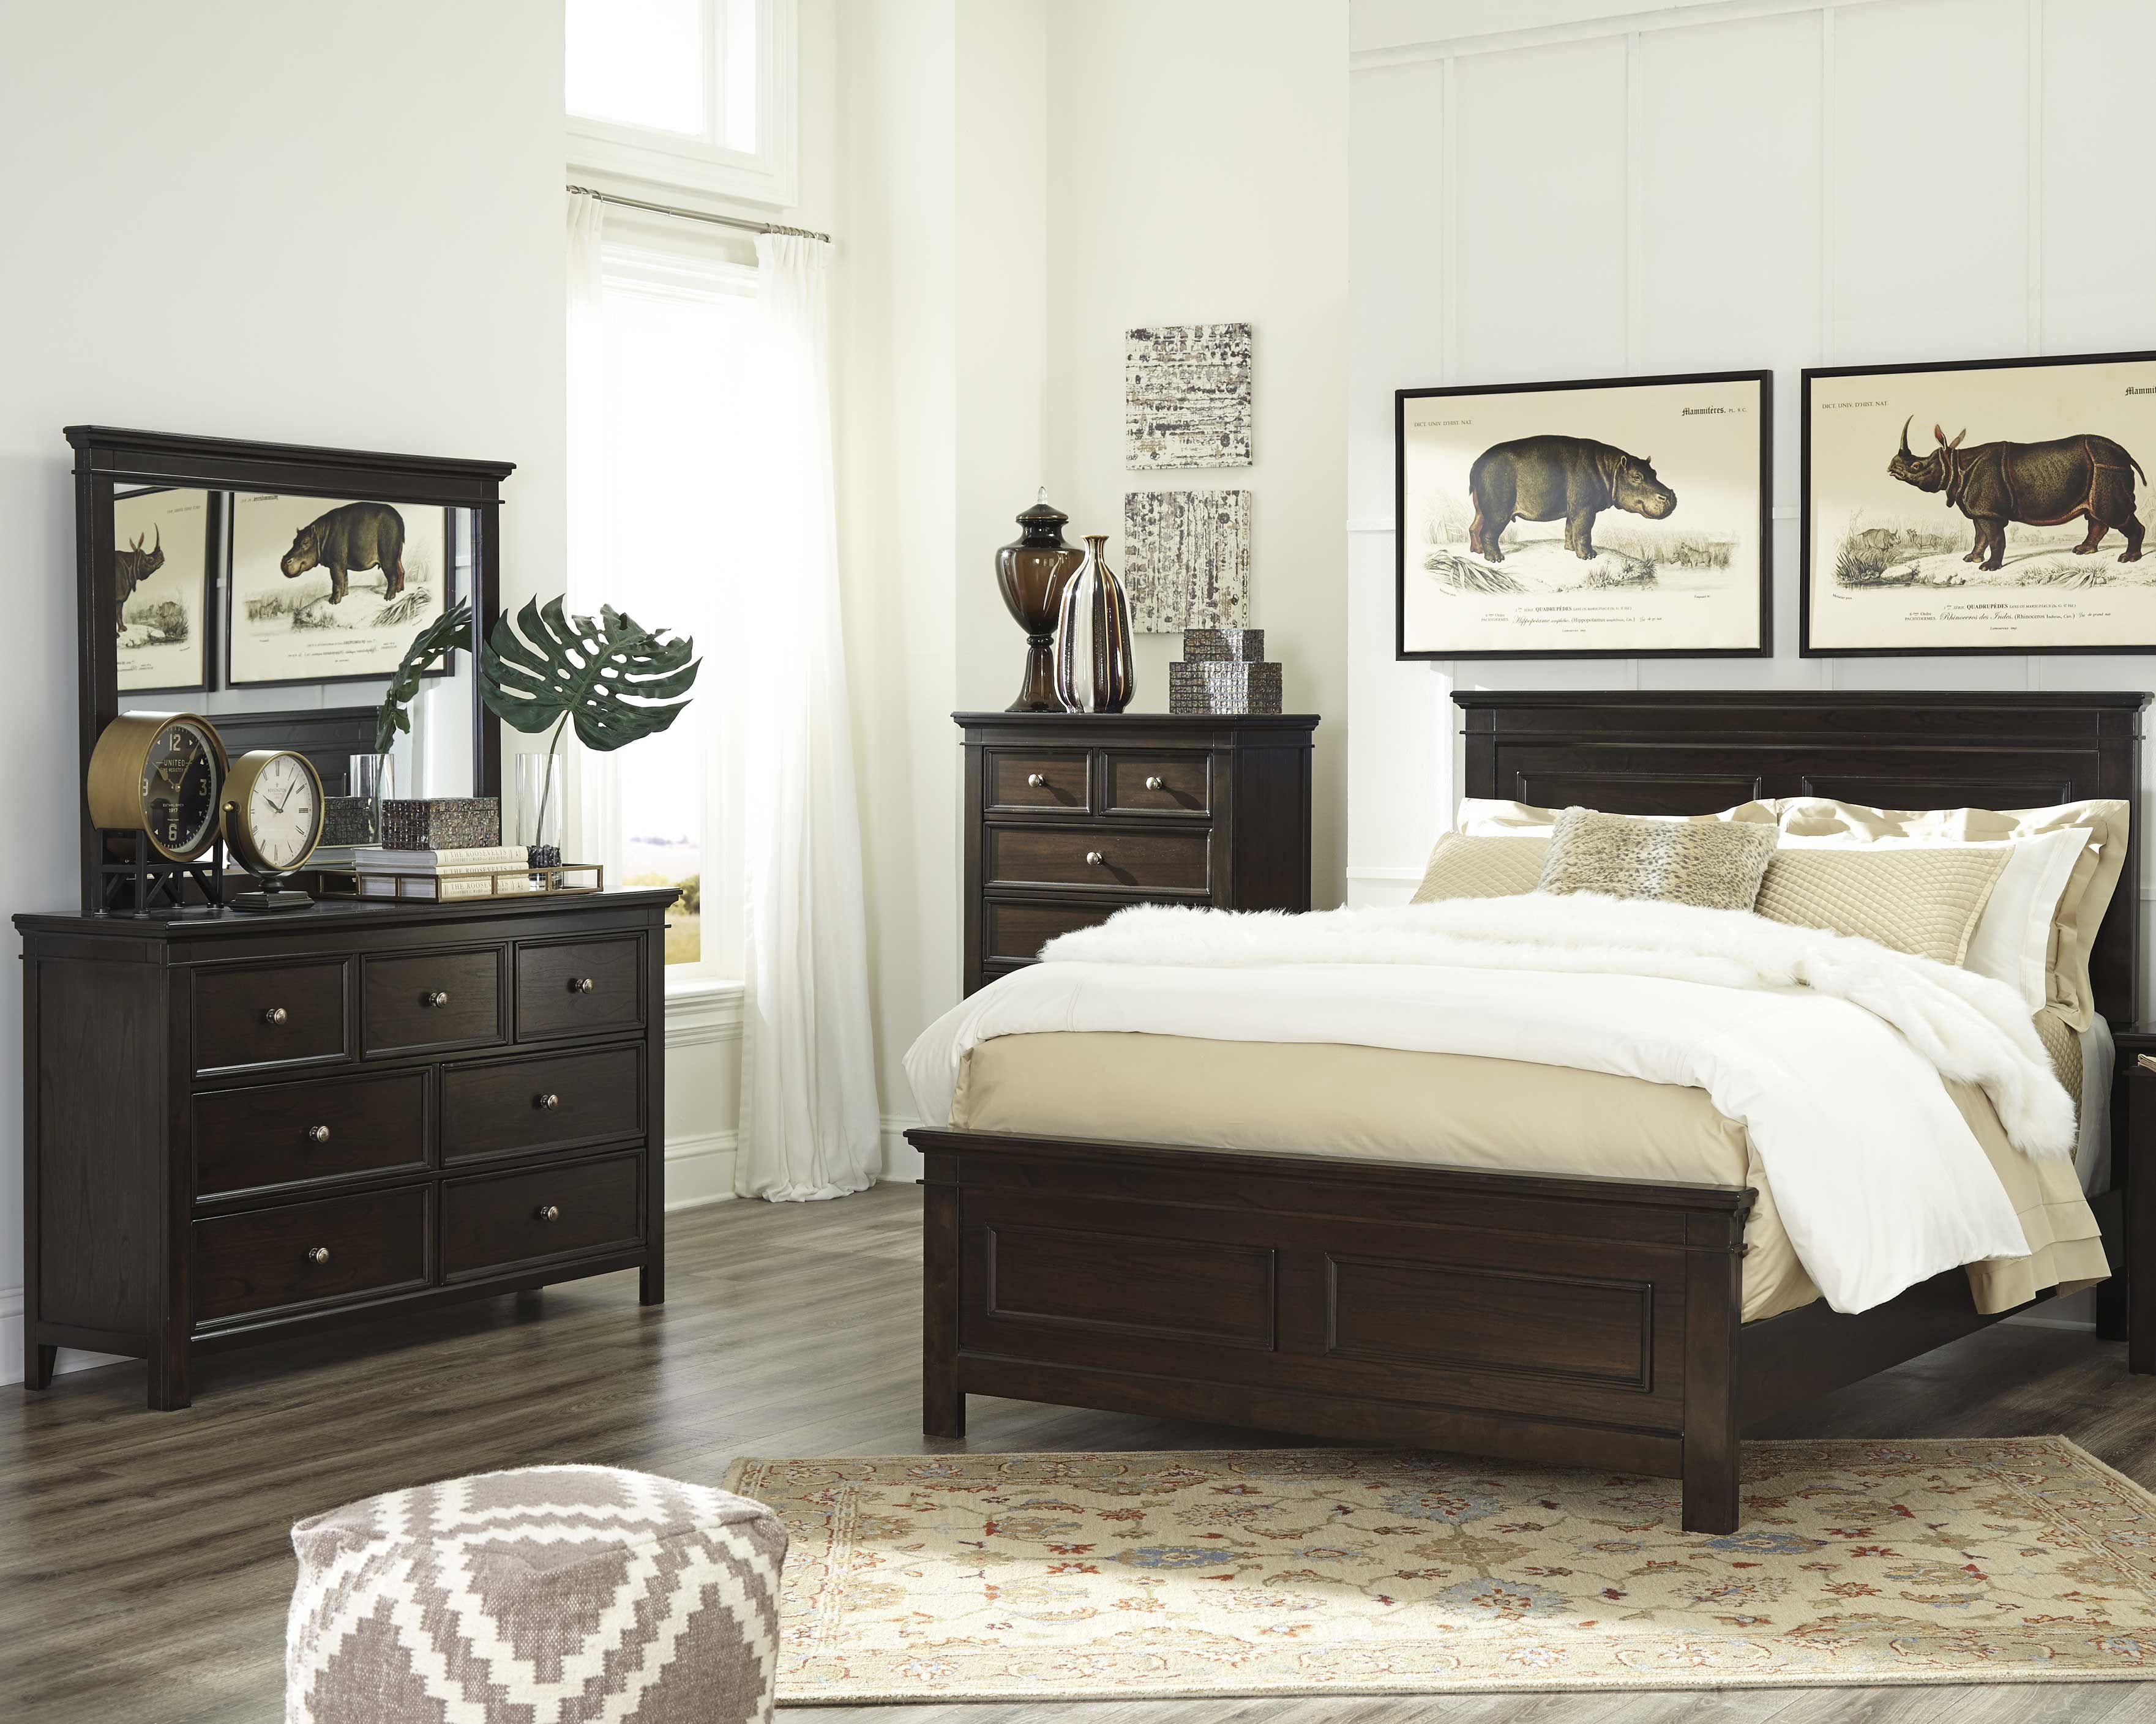 dark wood and metal bedroom furniture